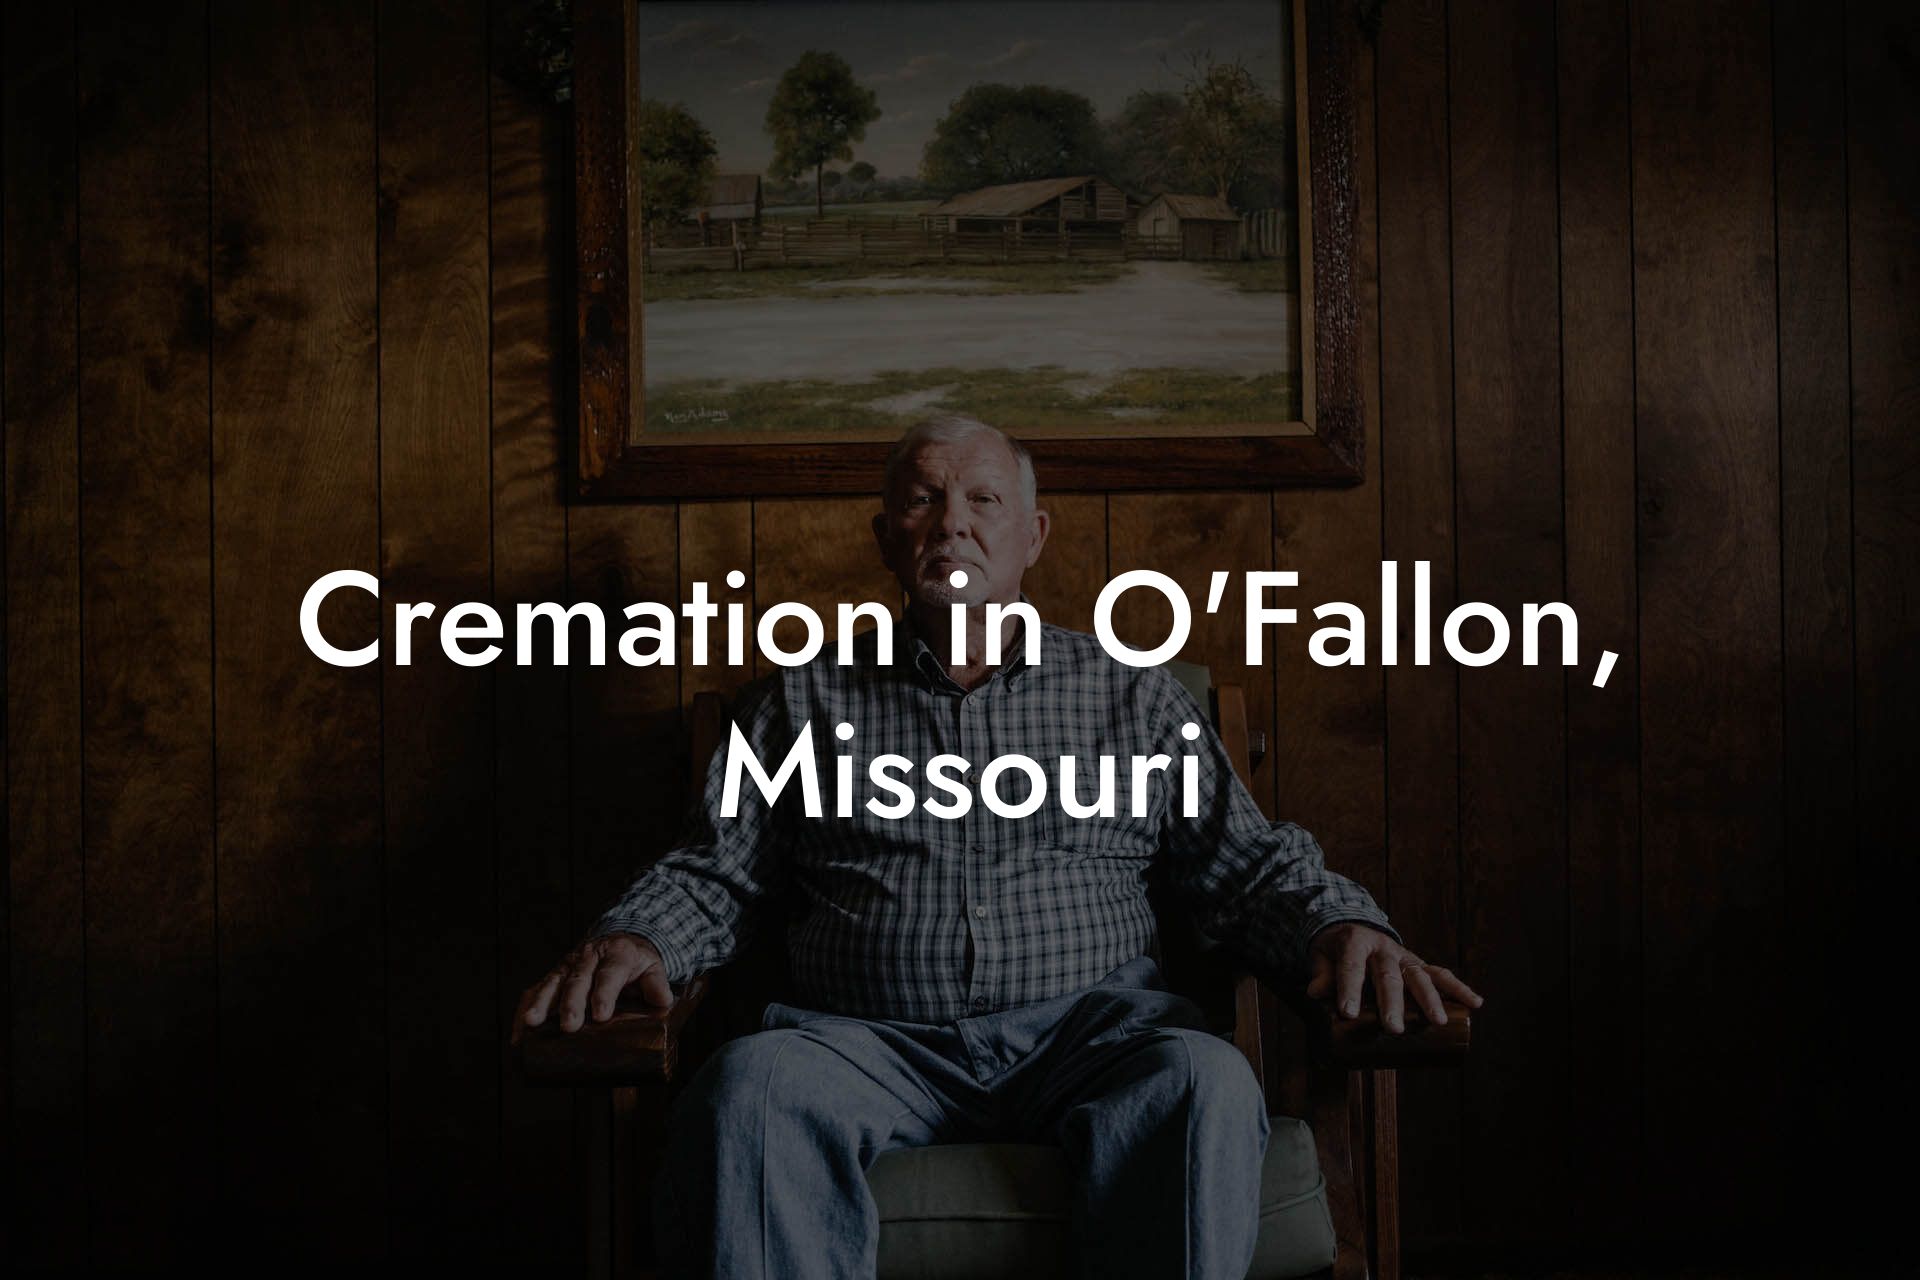 Cremation in O'Fallon, Missouri